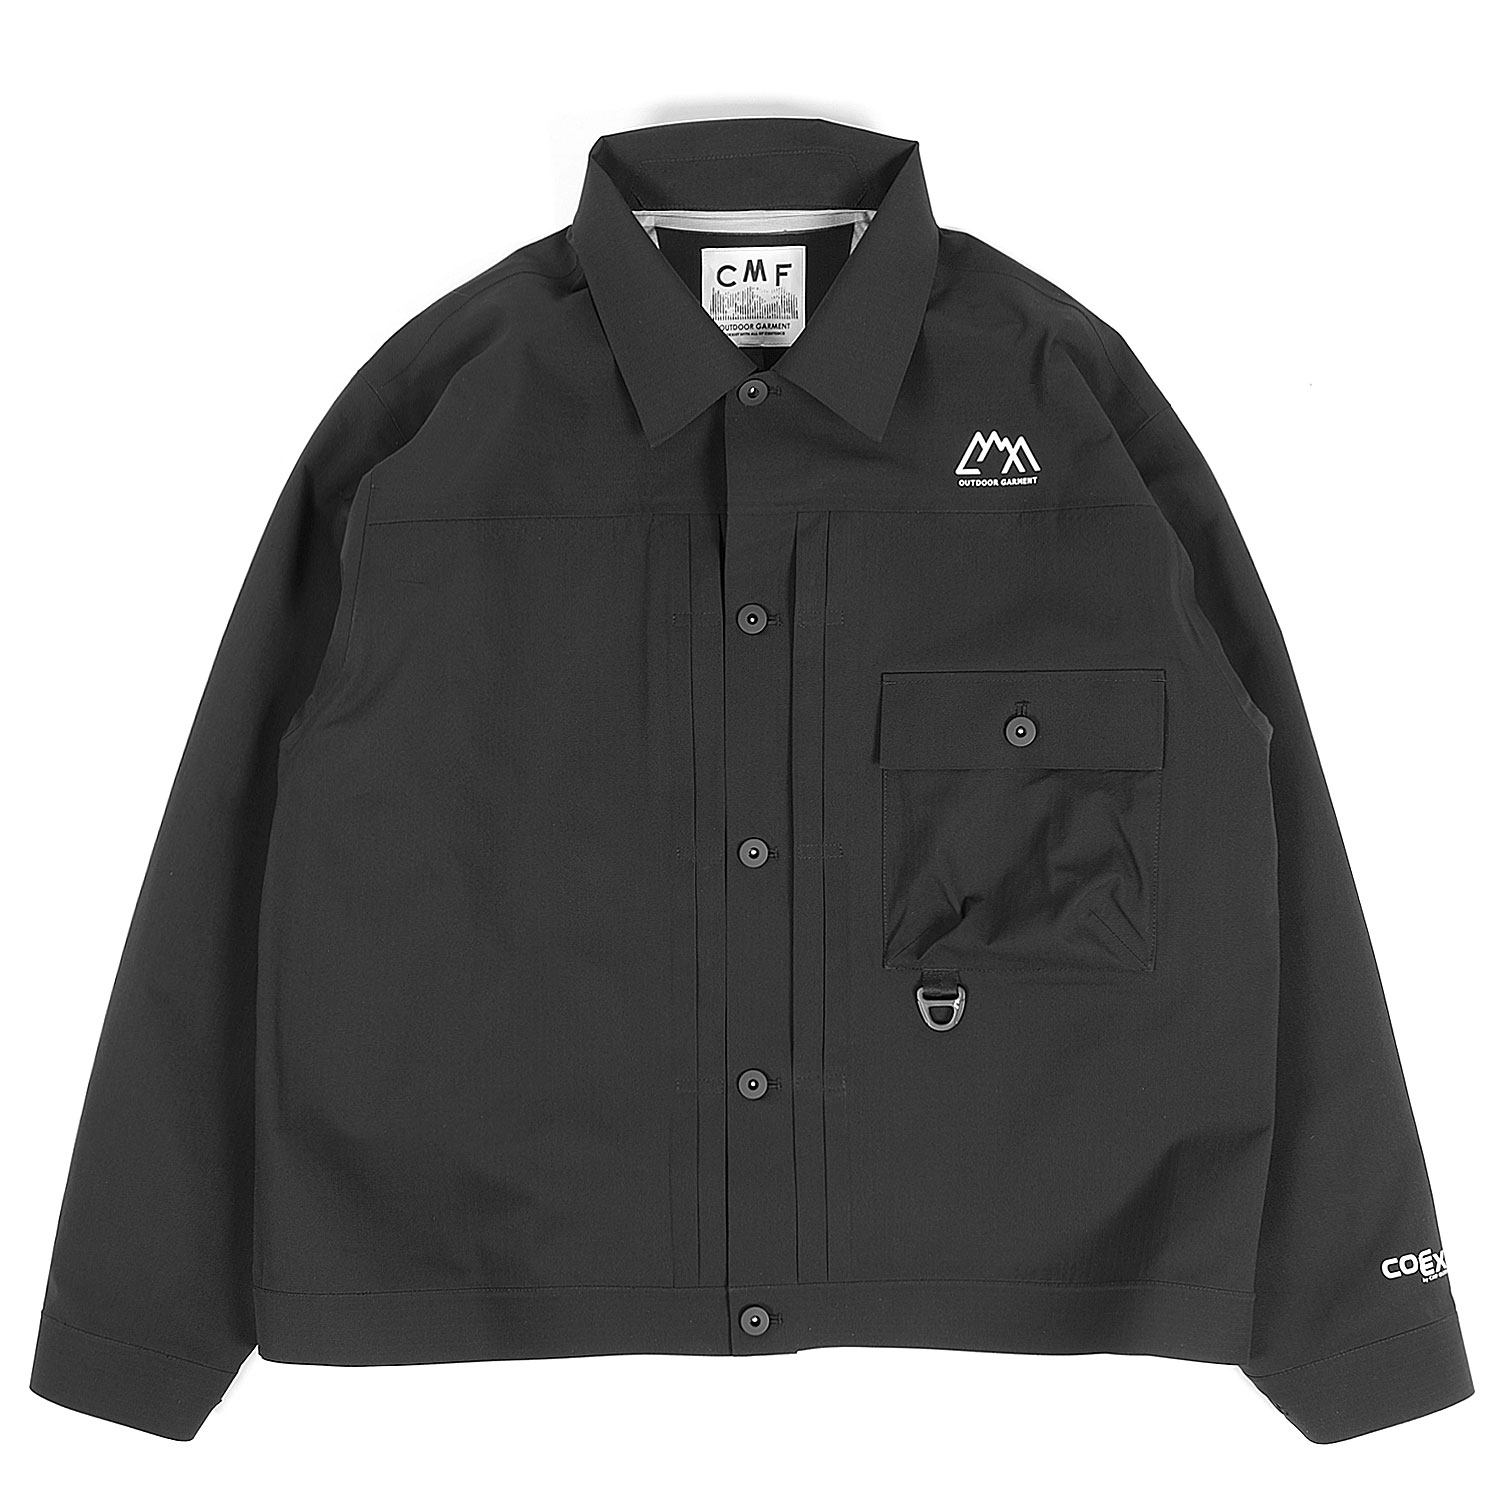 CMF Outdoor Garment C506 Coexist Jacket